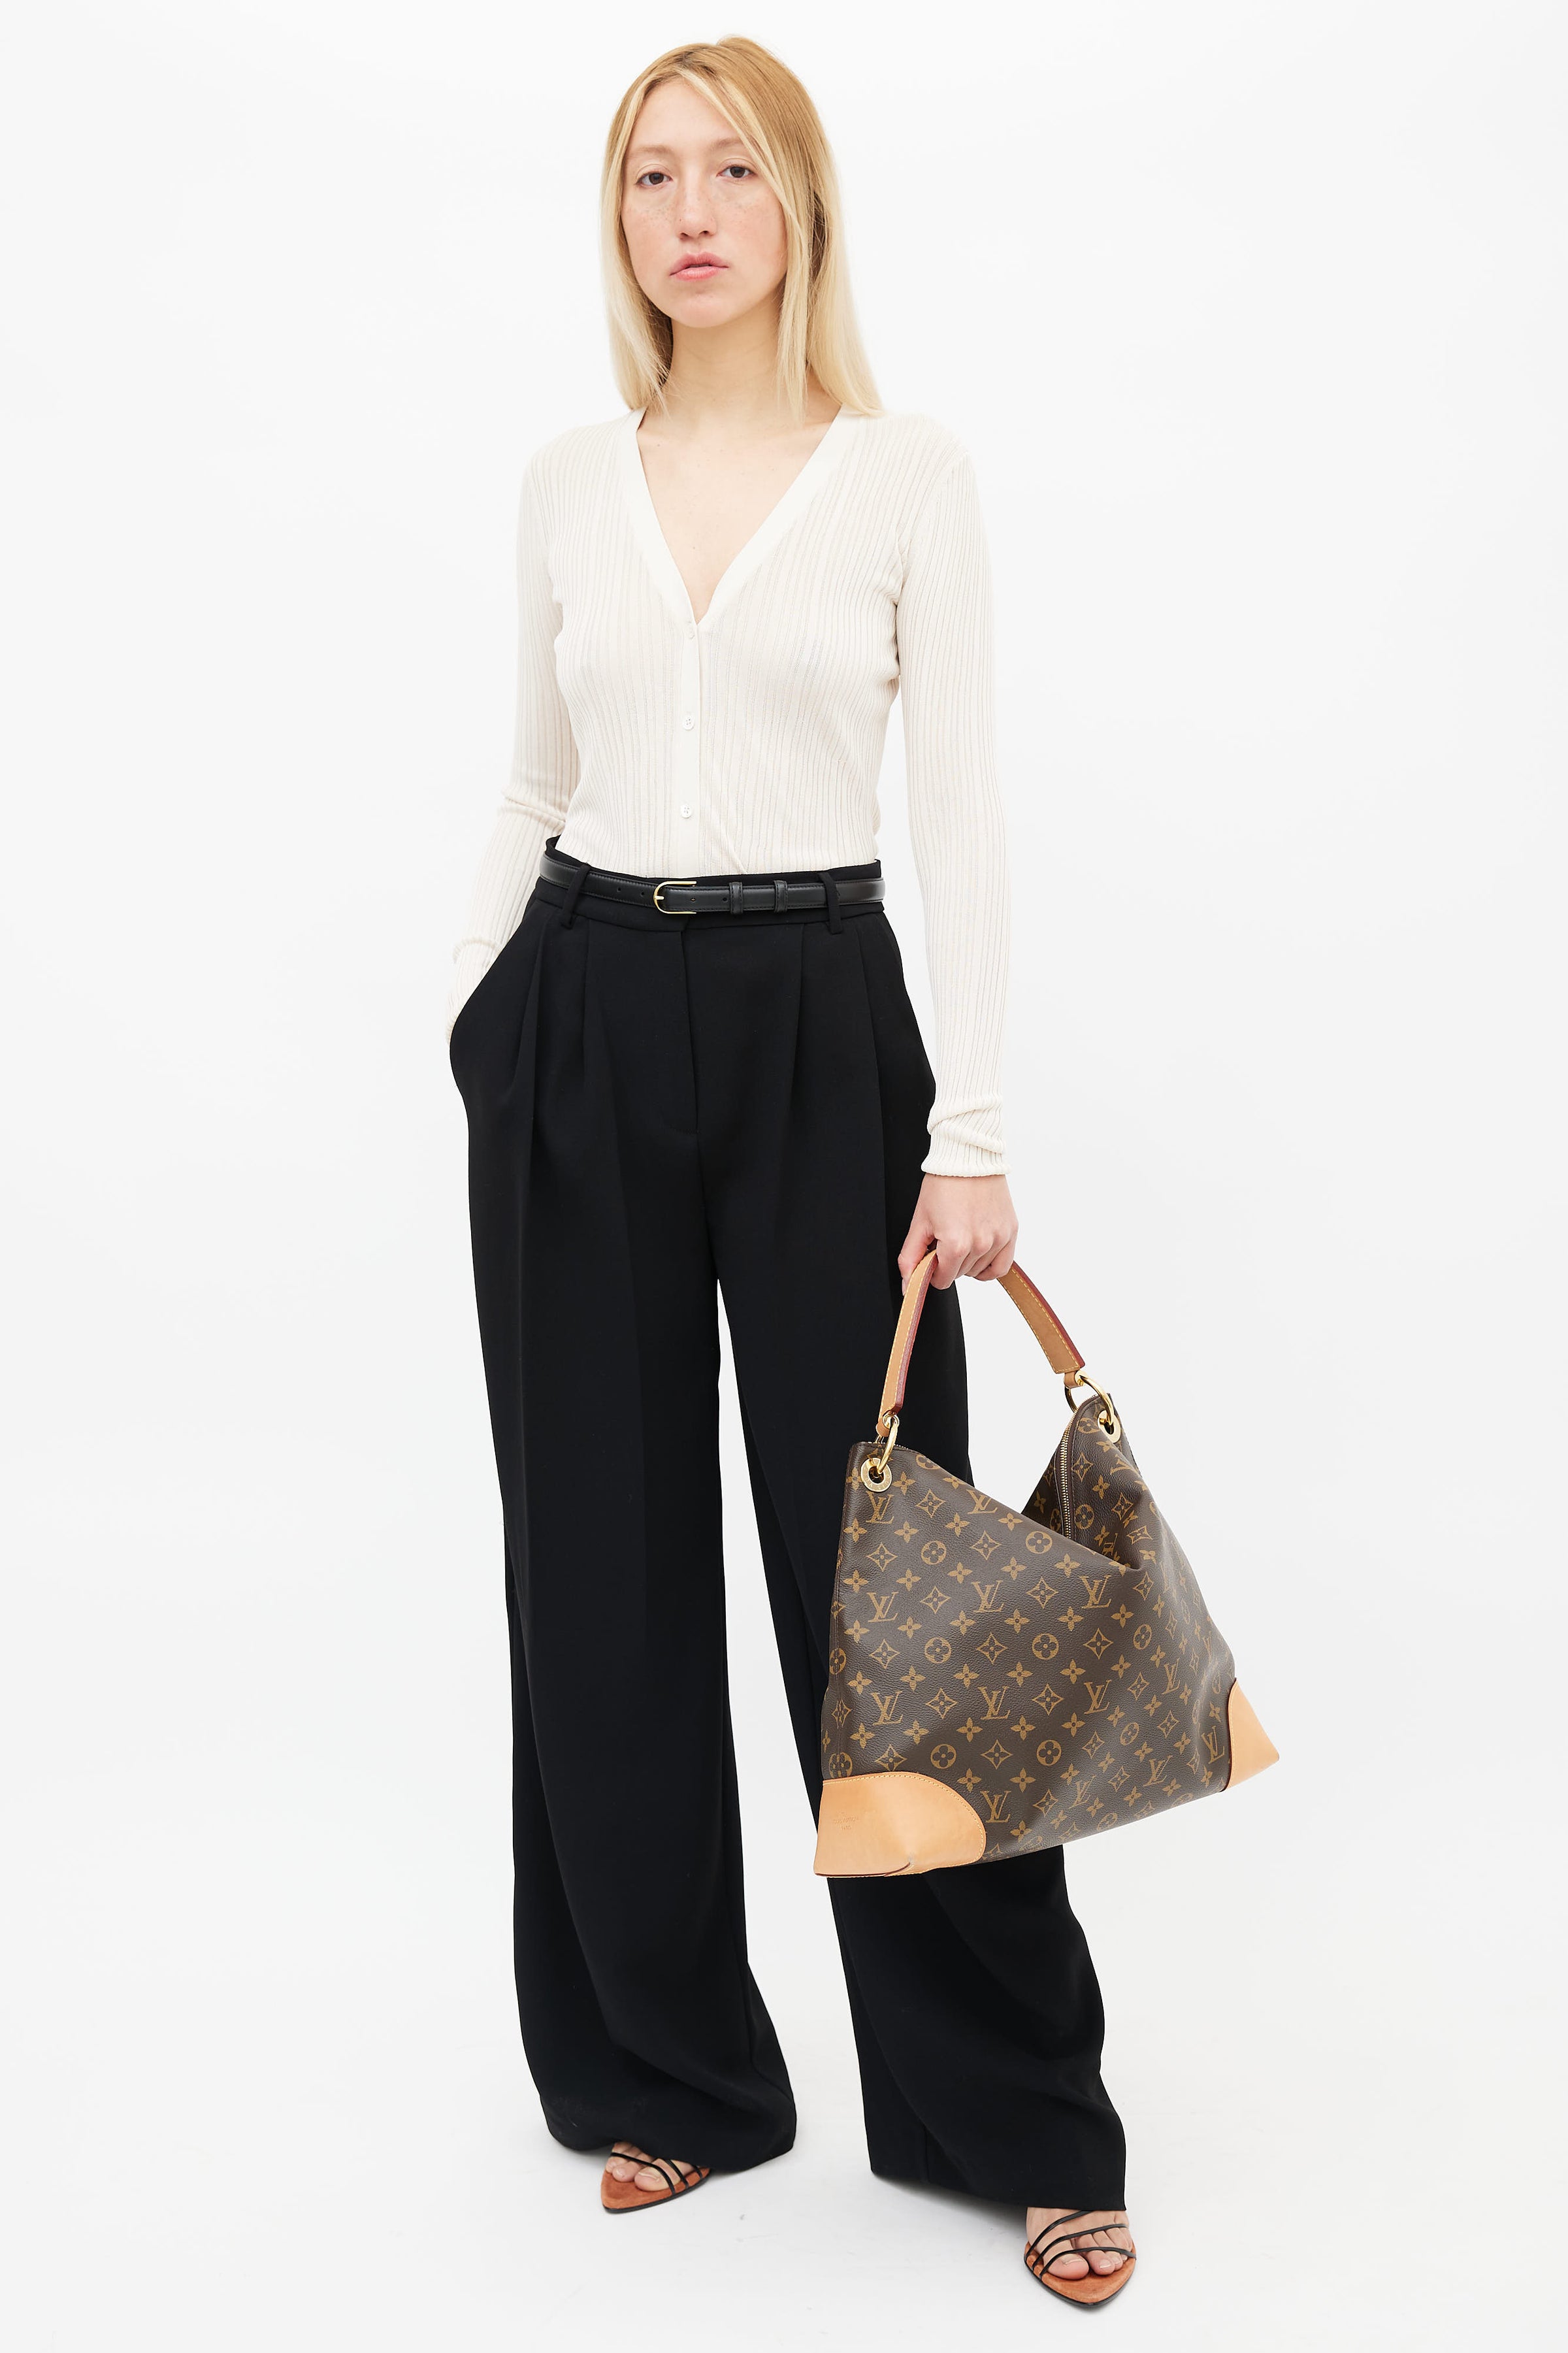 Louis Vuitton, Bags, Louis Vuitton Monogram Berri Mm Shoulder Bag